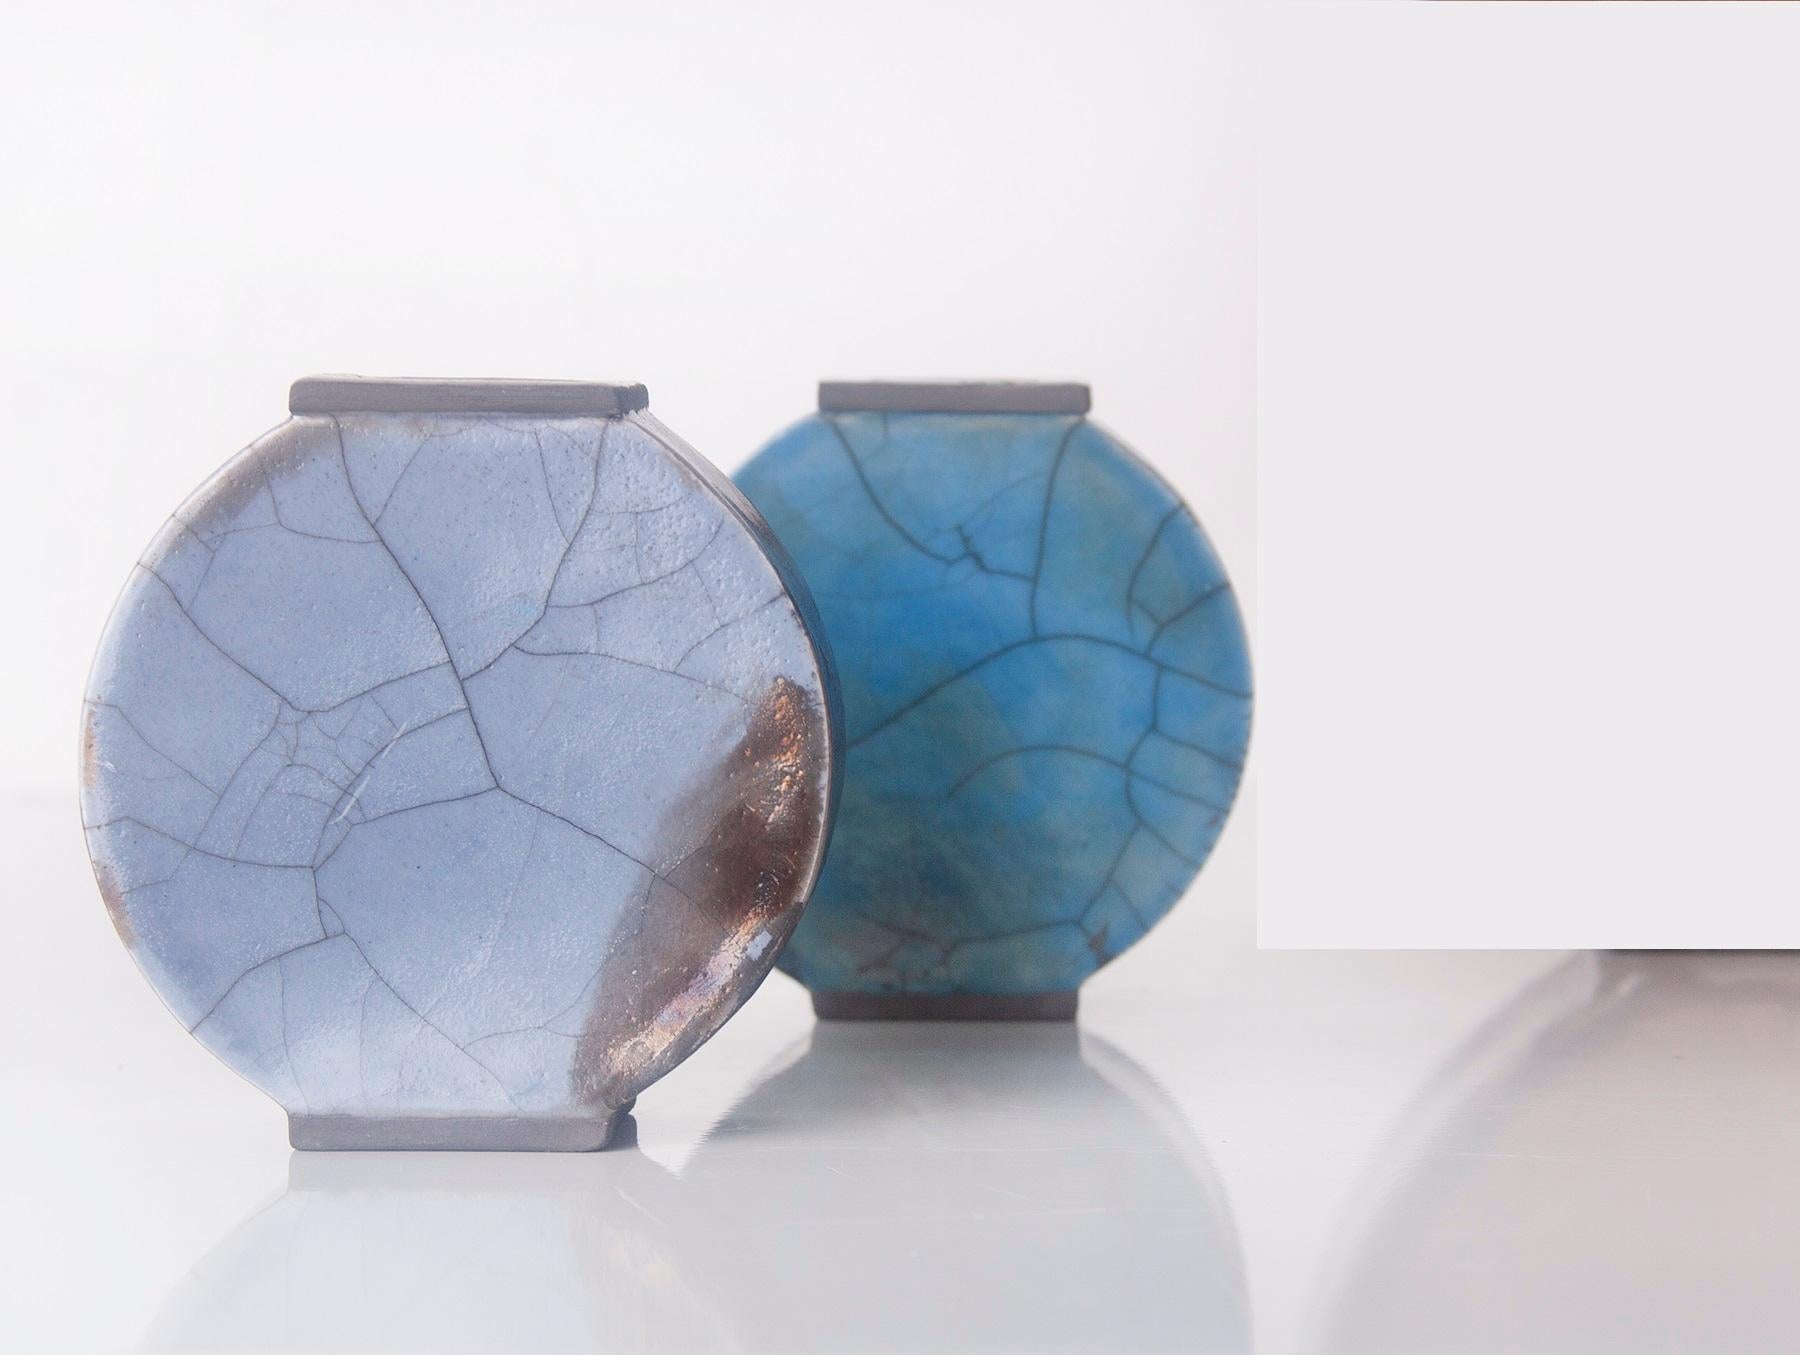 2er-Set Immergrüner Vasen von Doa Ceramics
Abmessungen:
Klein 3,5